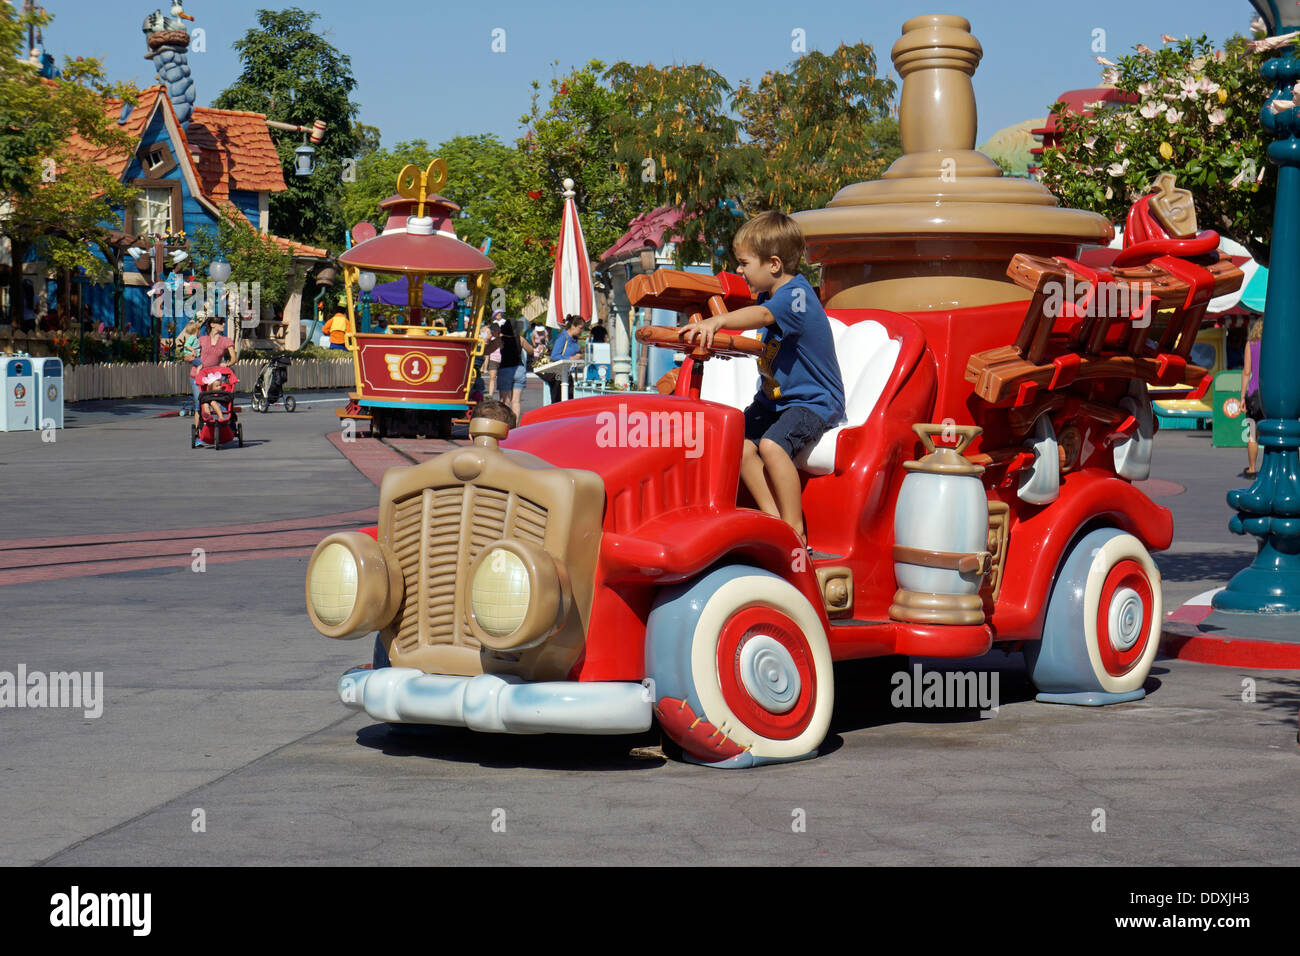 Enfant jouant sur la voiture rouge, Toontown, Disneyland, Fantasyland, Magic Kingdom, Anaheim en Californie Banque D'Images